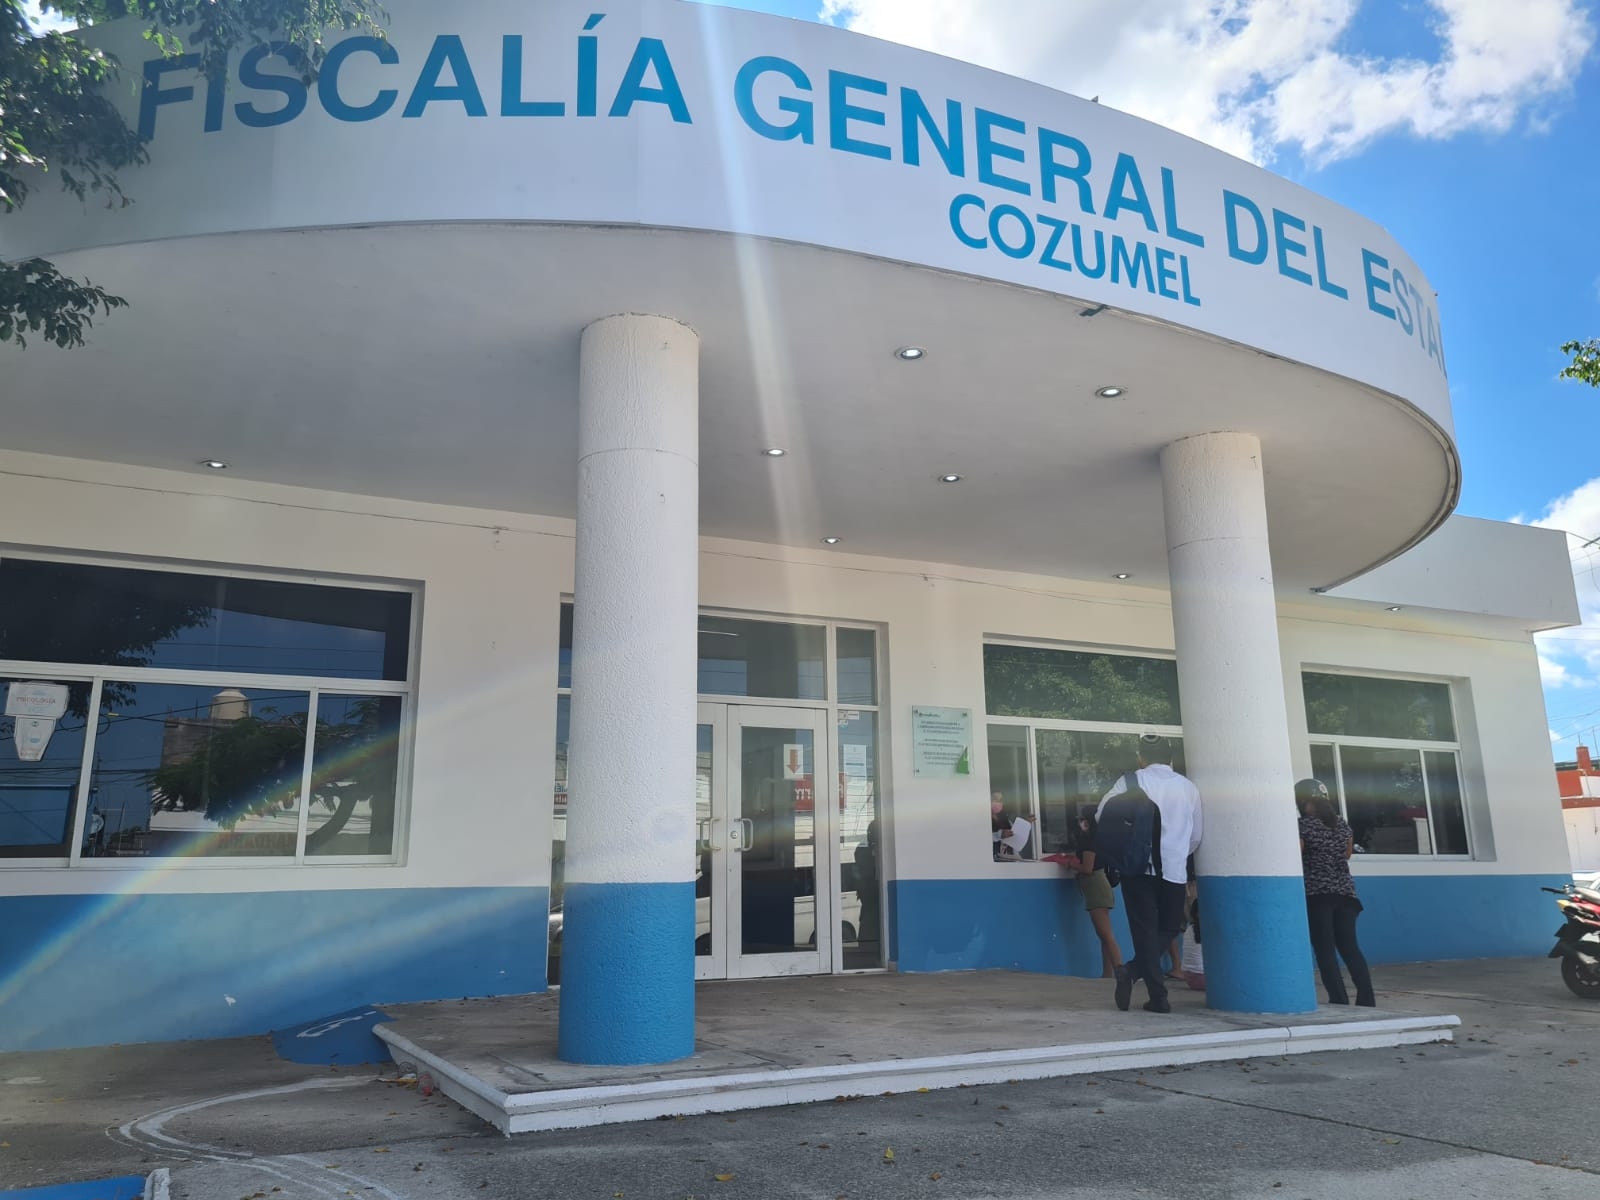 Denuncian a funcionario público por presunto abuso sexual en Cozumel